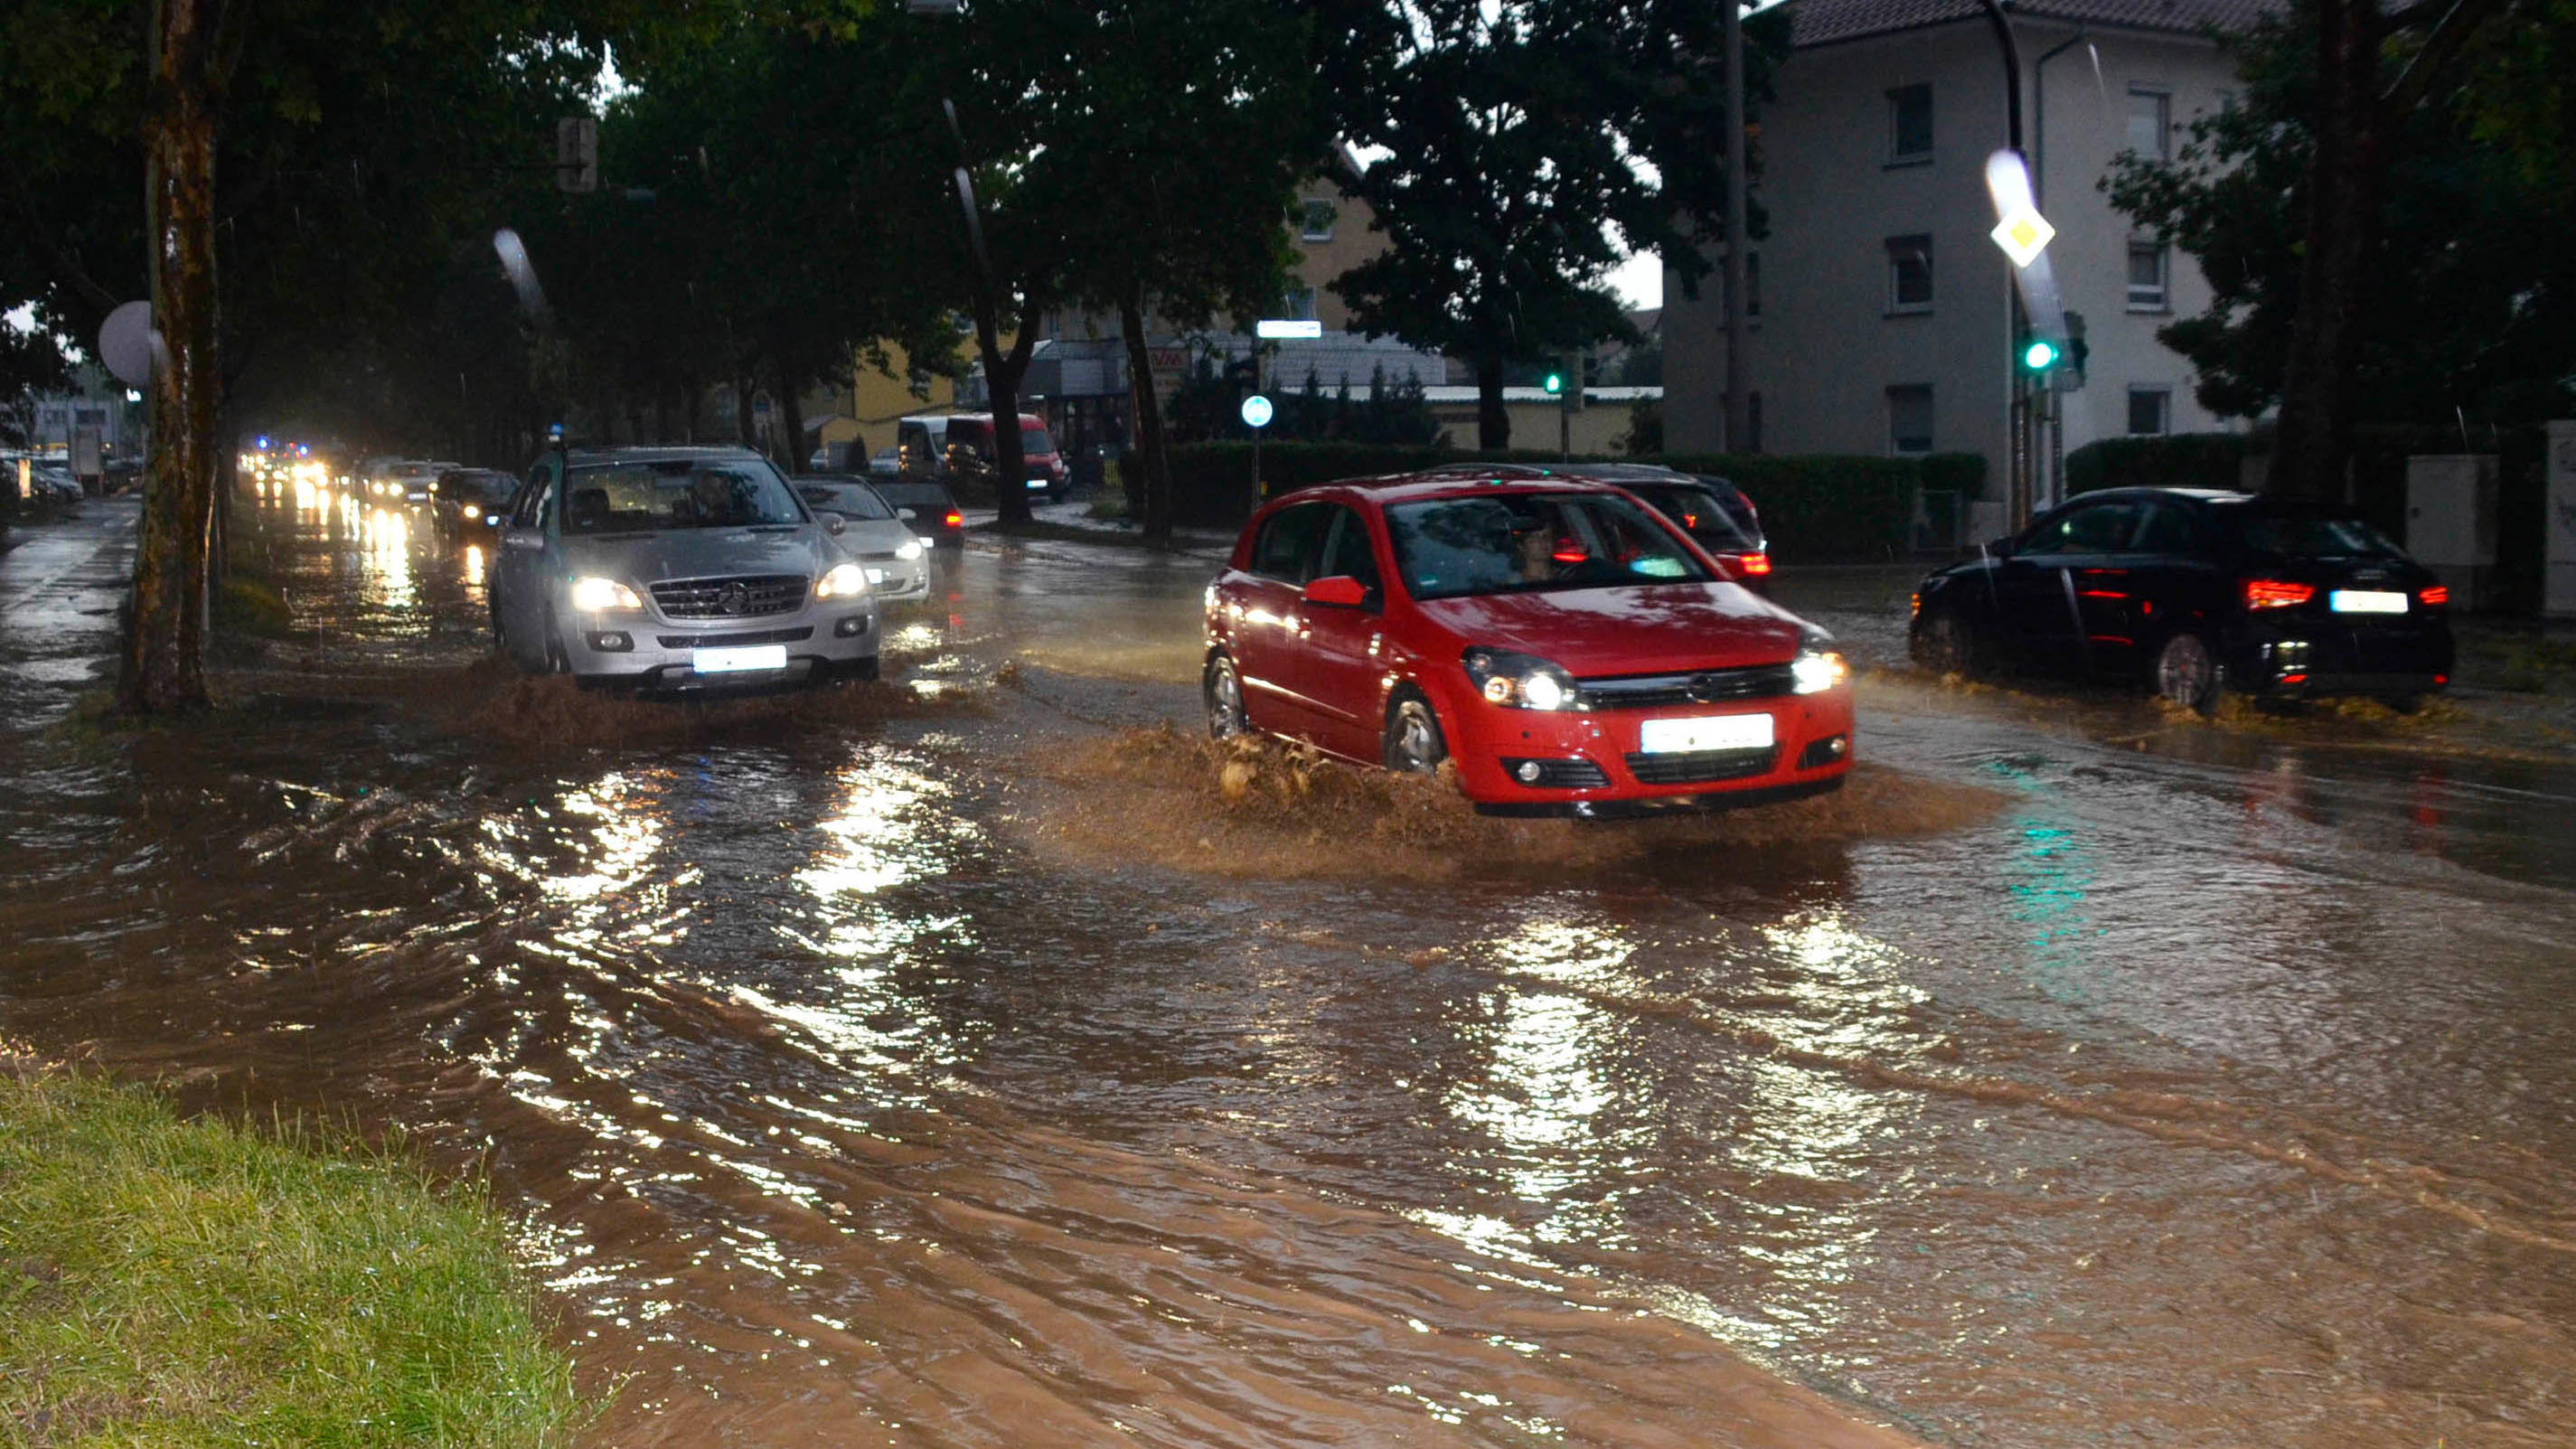 09.06.2018, Baden-Württemberg, Heilbronn: Autos fahren nach einem schweren Unwetter über eine überflutete Straße. Foto: Andreas Rosar/dpa +++ dpa-Bildfunk +++